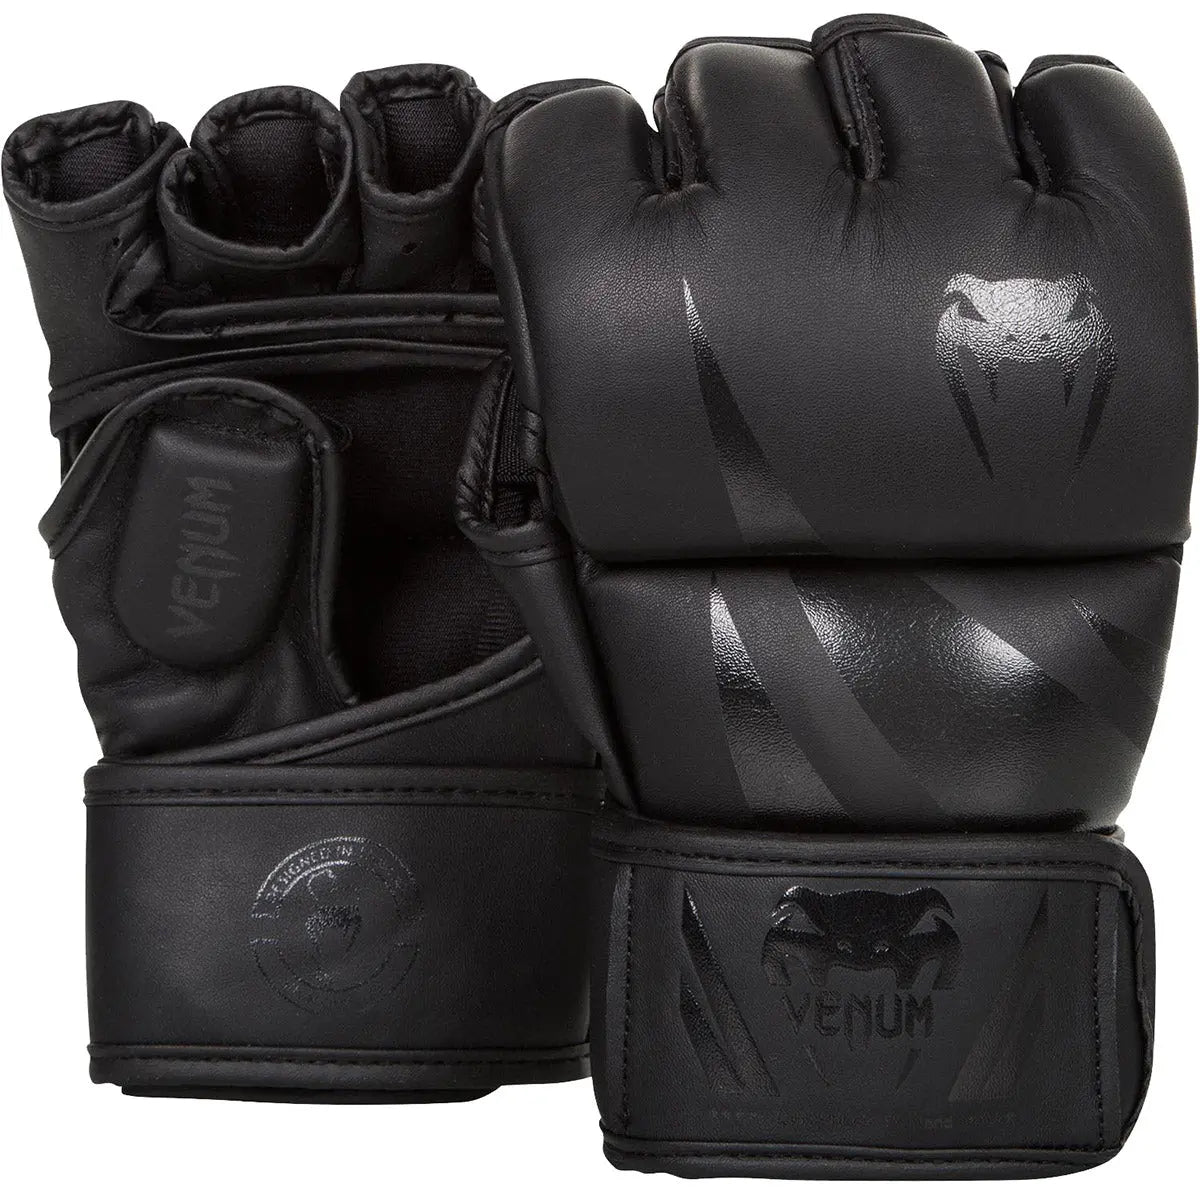 Venum Challenger MMA Training Gloves - Matte/Black